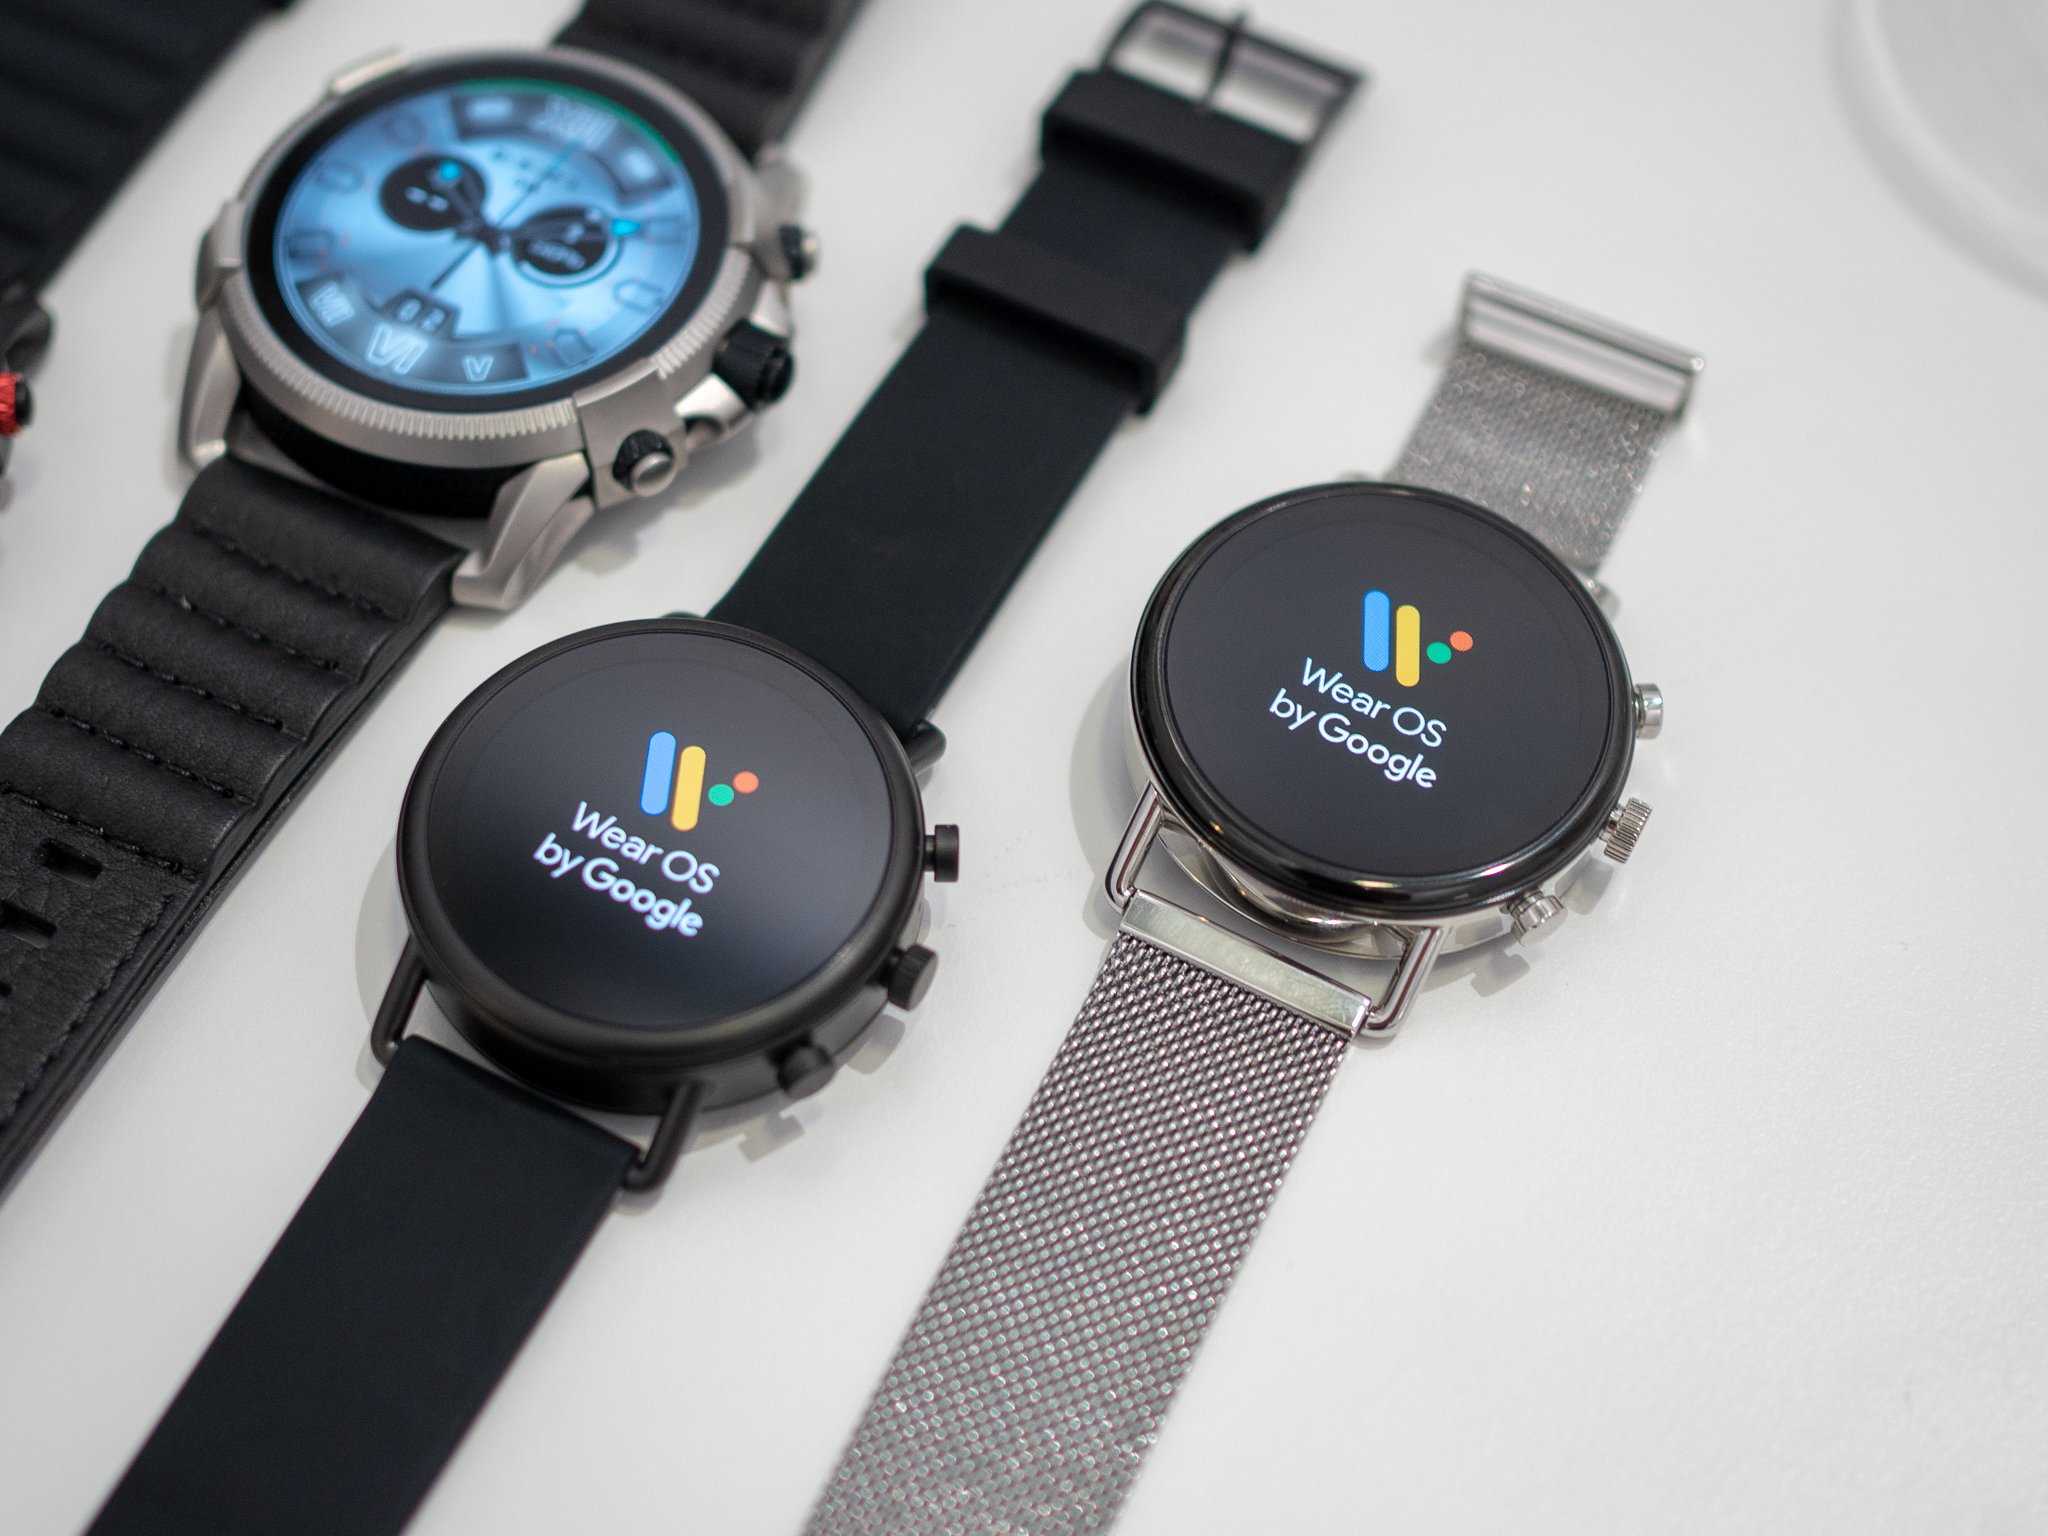 Wear время. Гугл вотч часы. Wear os смарт часы. Wear os by Google часы. Часы на Wear os 2021.